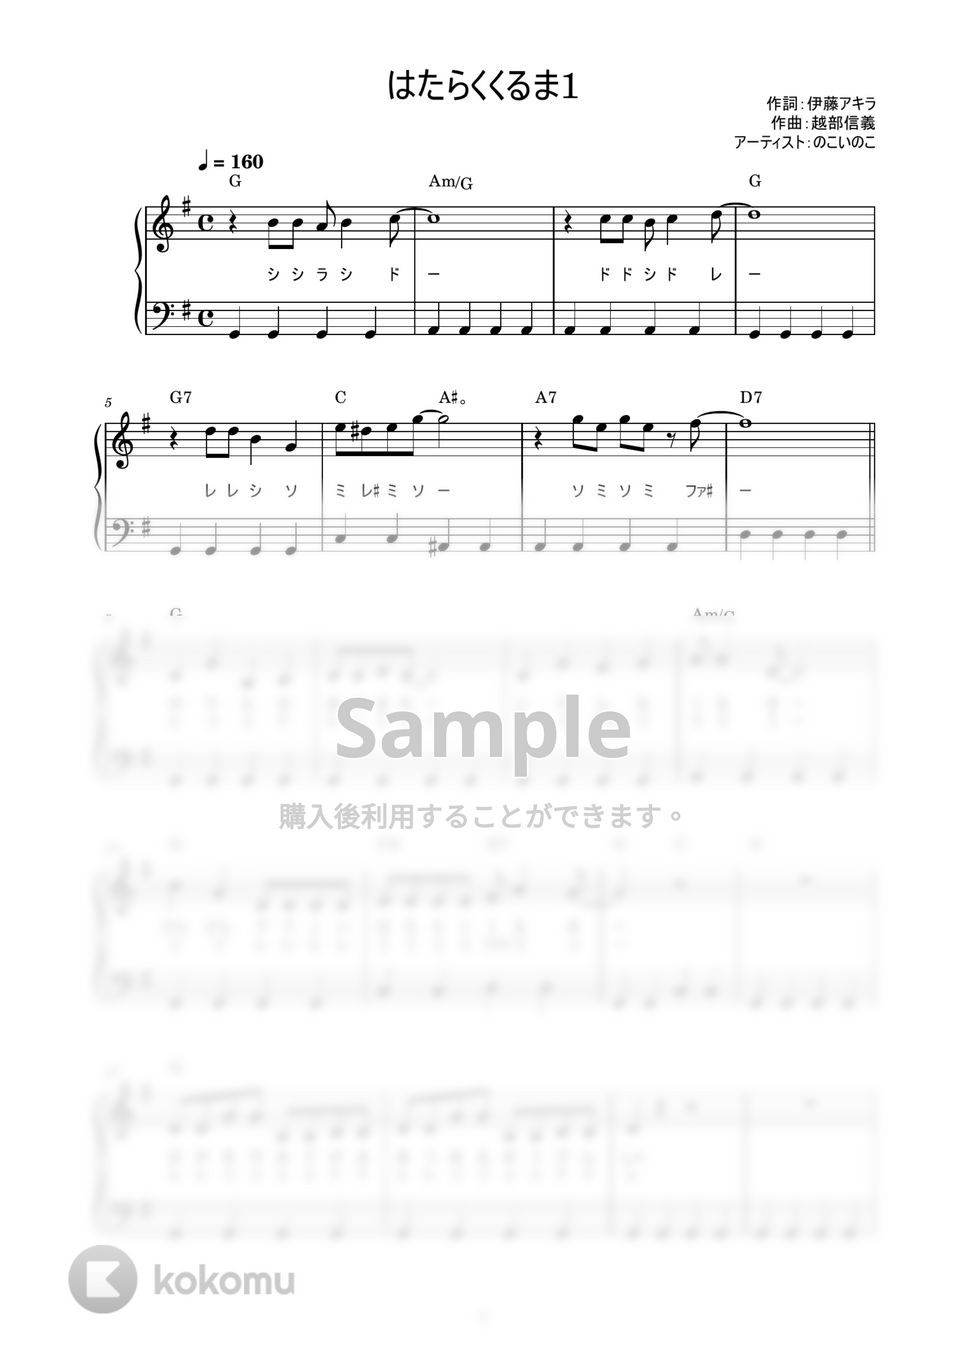 のこいのこ - はたらくくるま (かんたん / 歌詞付き / ドレミ付き / 初心者) by piano.tokyo